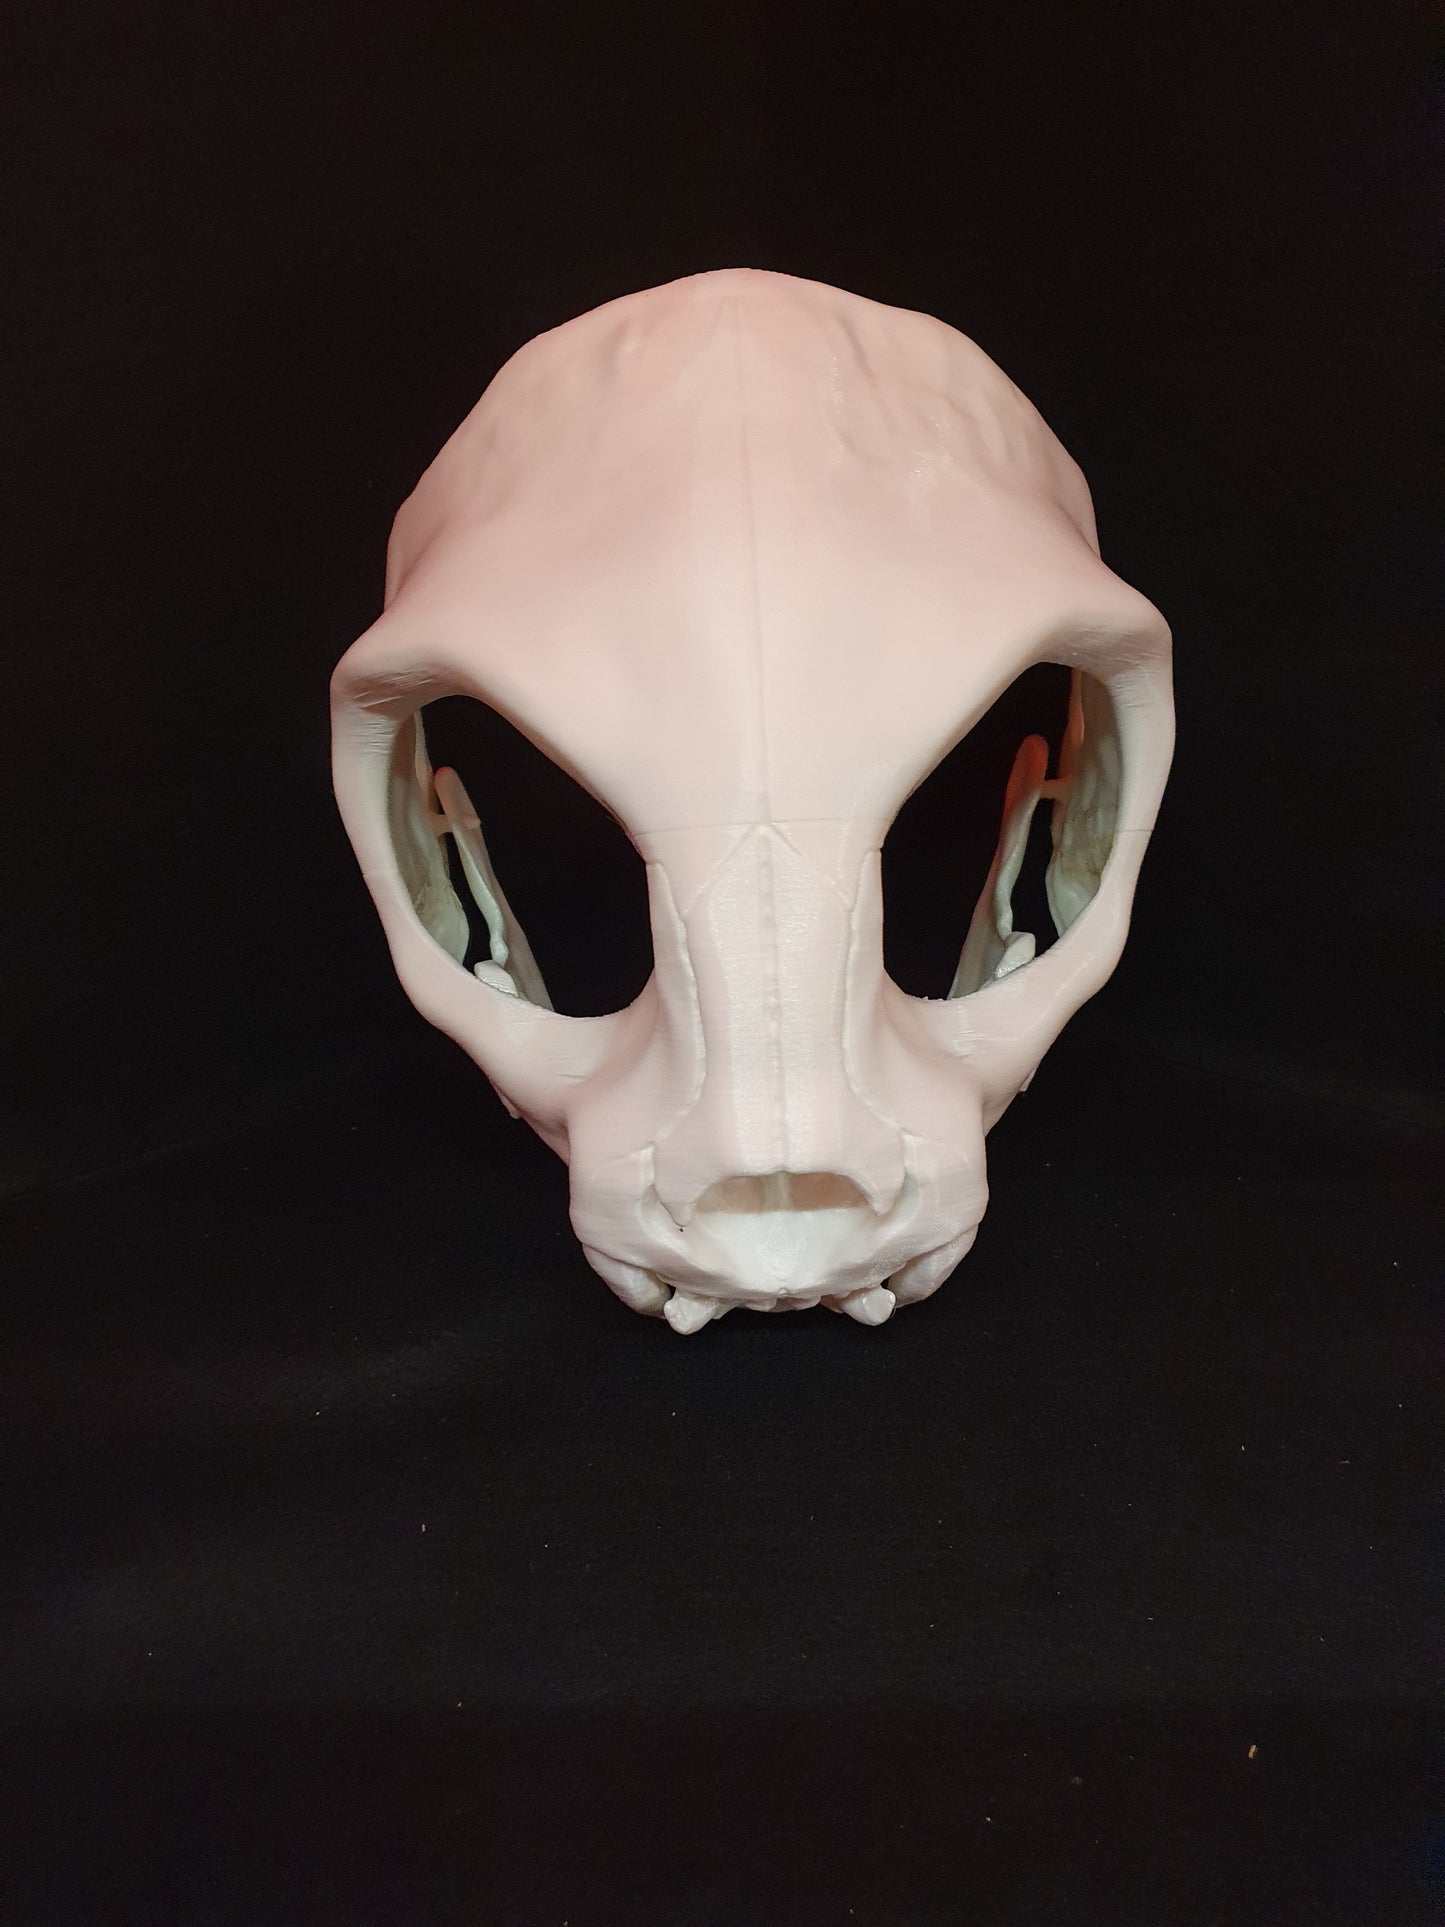 Catskull - Cat skull cosplay mask